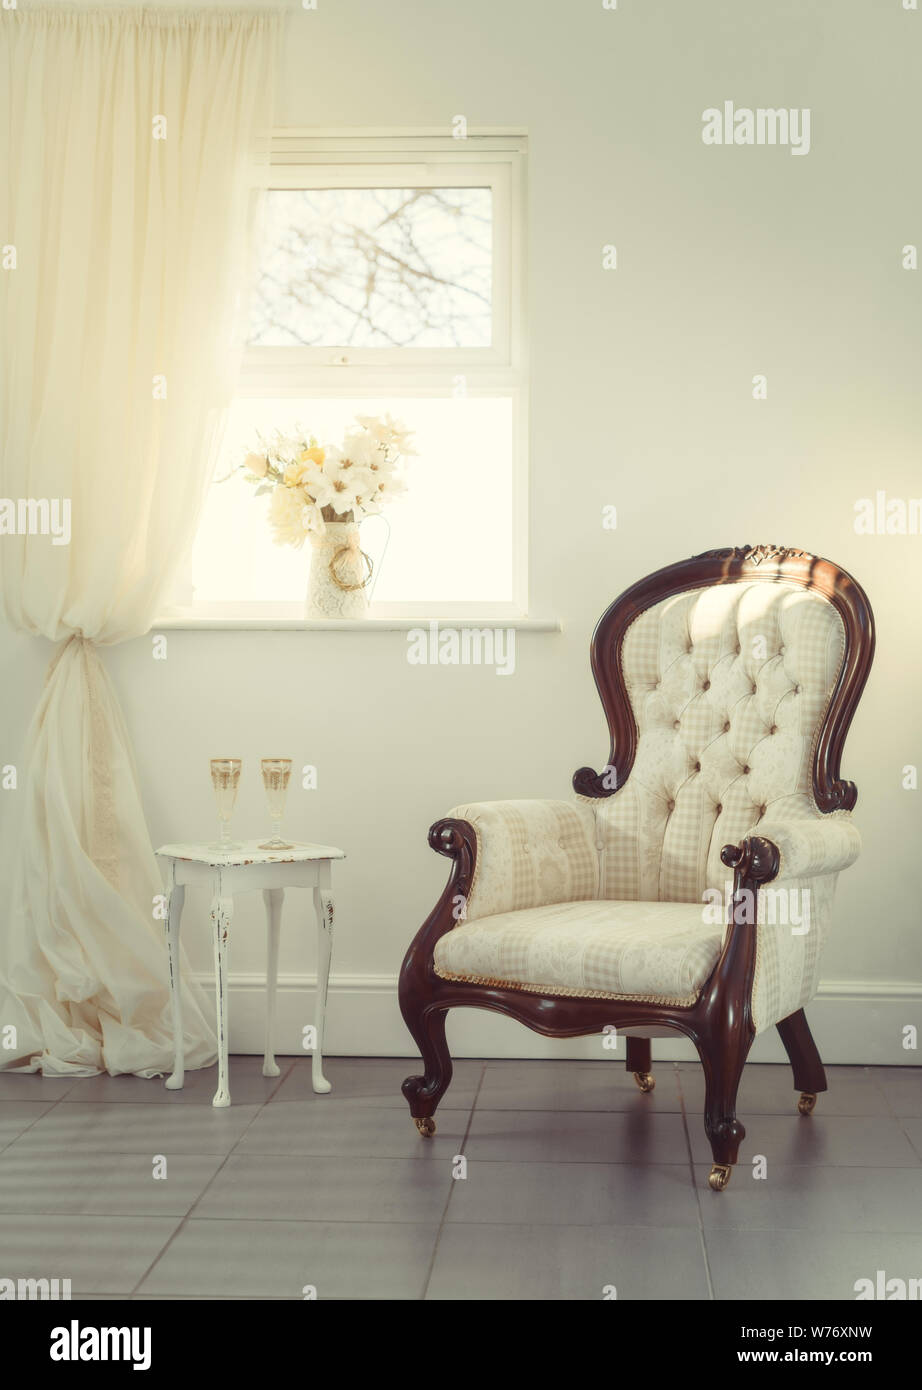 Zwei Gläser champagen in einem Zimmer mit einem bequemen Stuhl und Vase mit Blumen Stockfoto